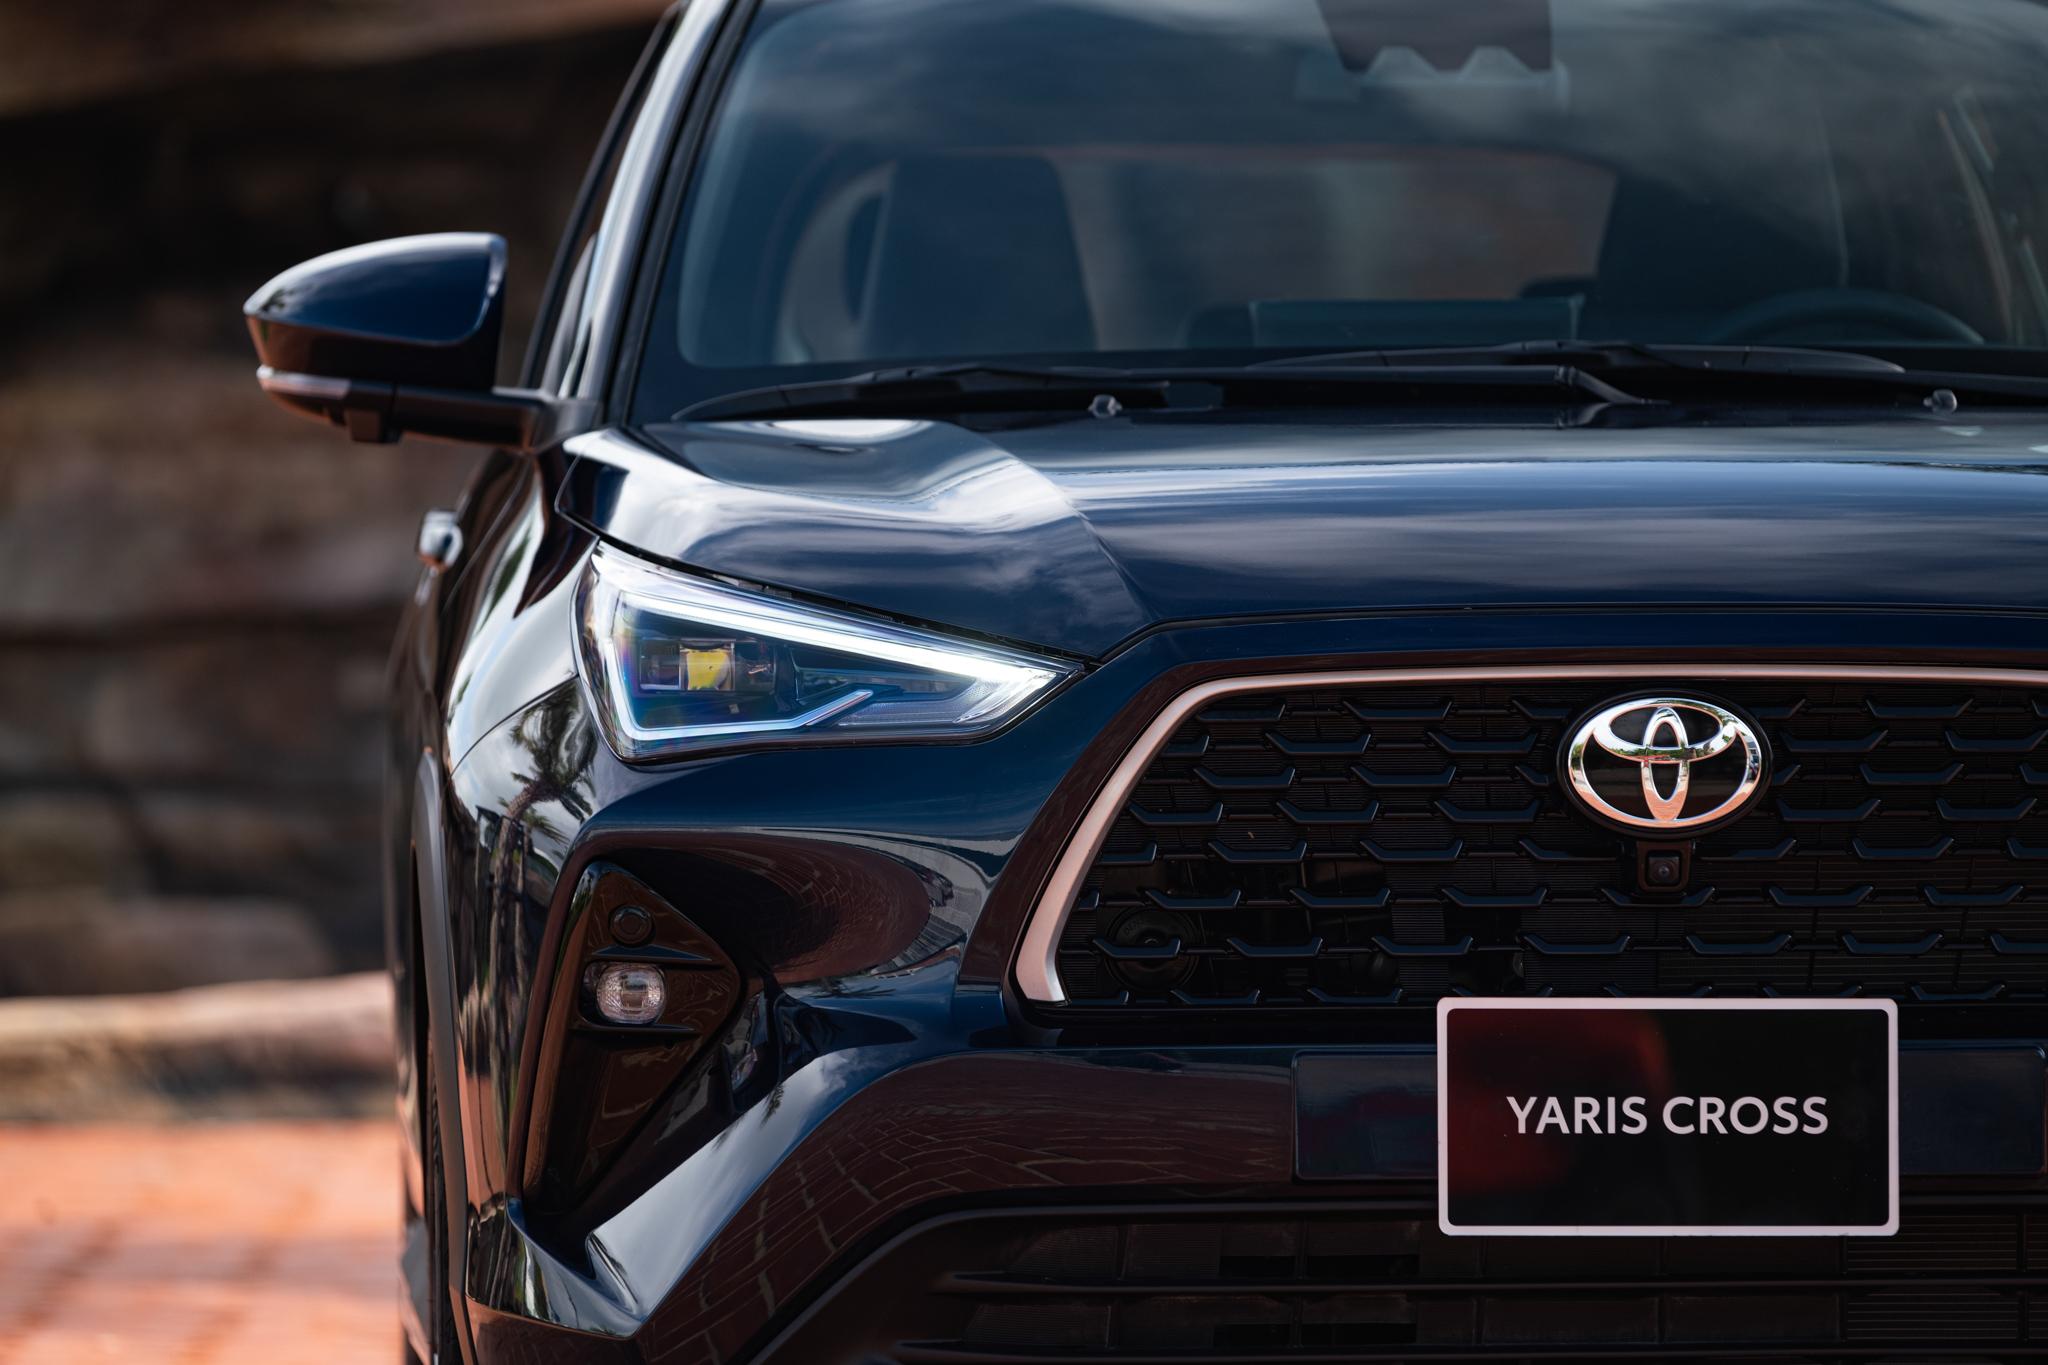 Chắc chắn và mạnh mẽ là 2 tính từ để miêu tả đầu xe Toyota Yaris Cross.